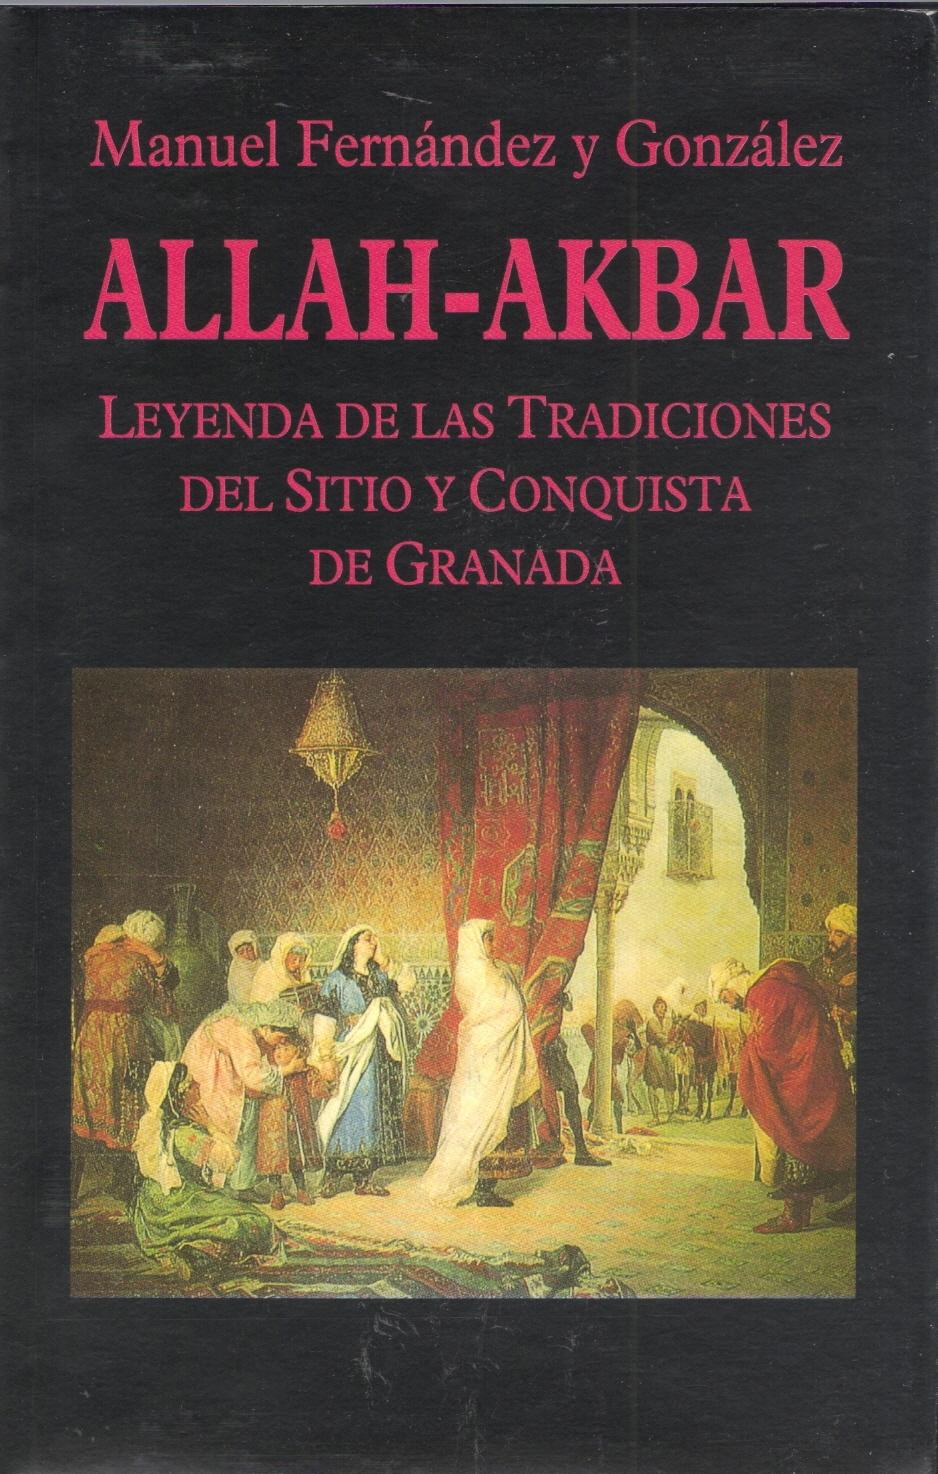 Allah-Akbar "Leyenda de las tradiciones del sitio y conquista de Granada"